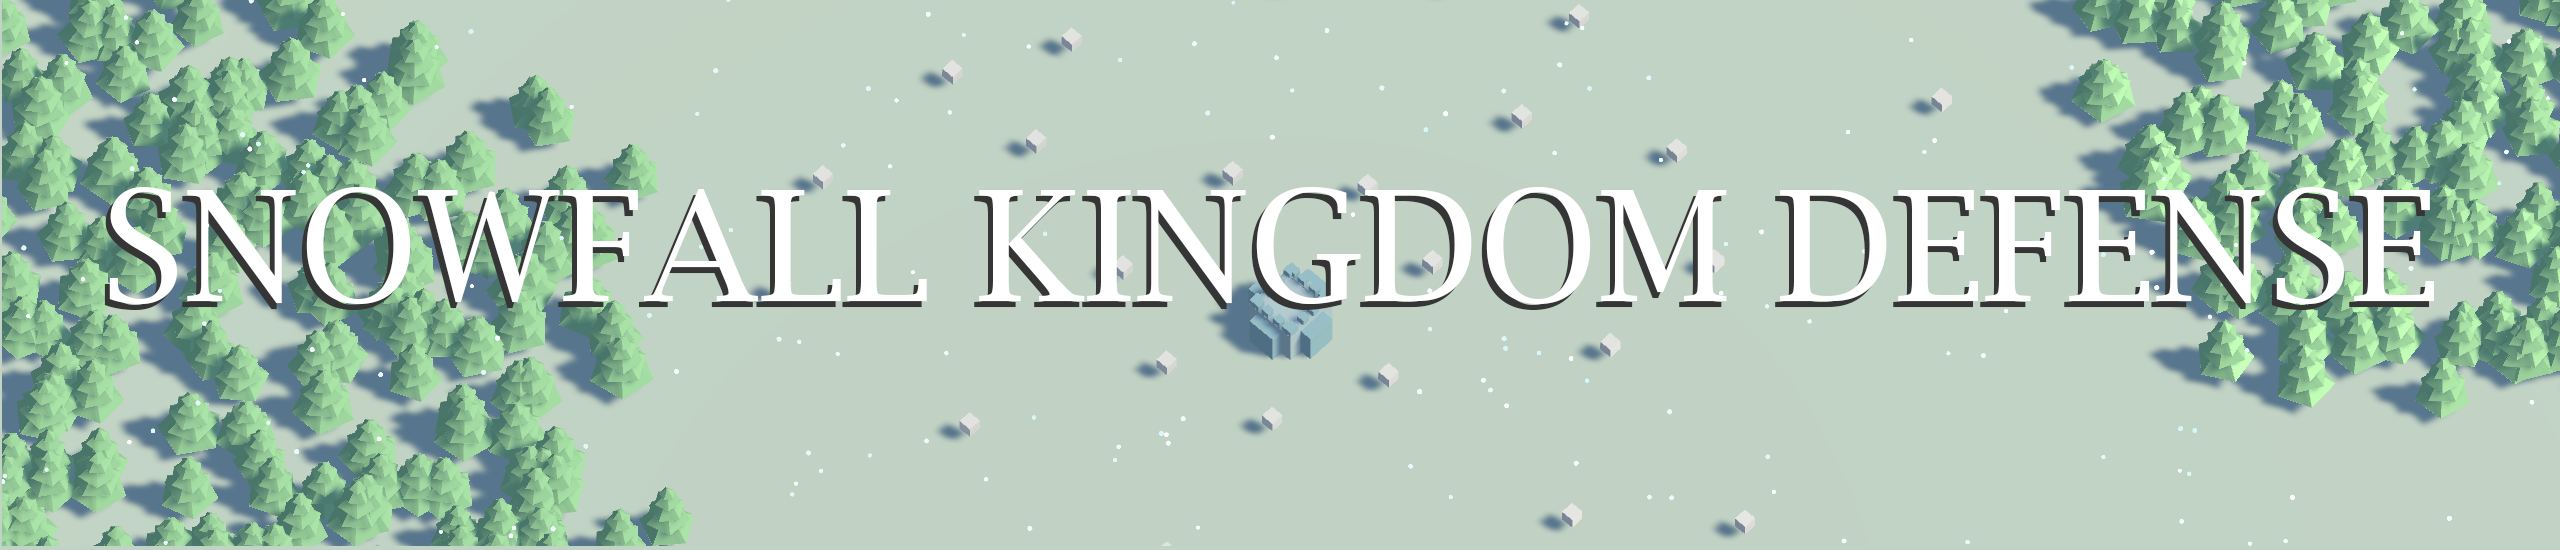 Snowfall Kingdom Defense